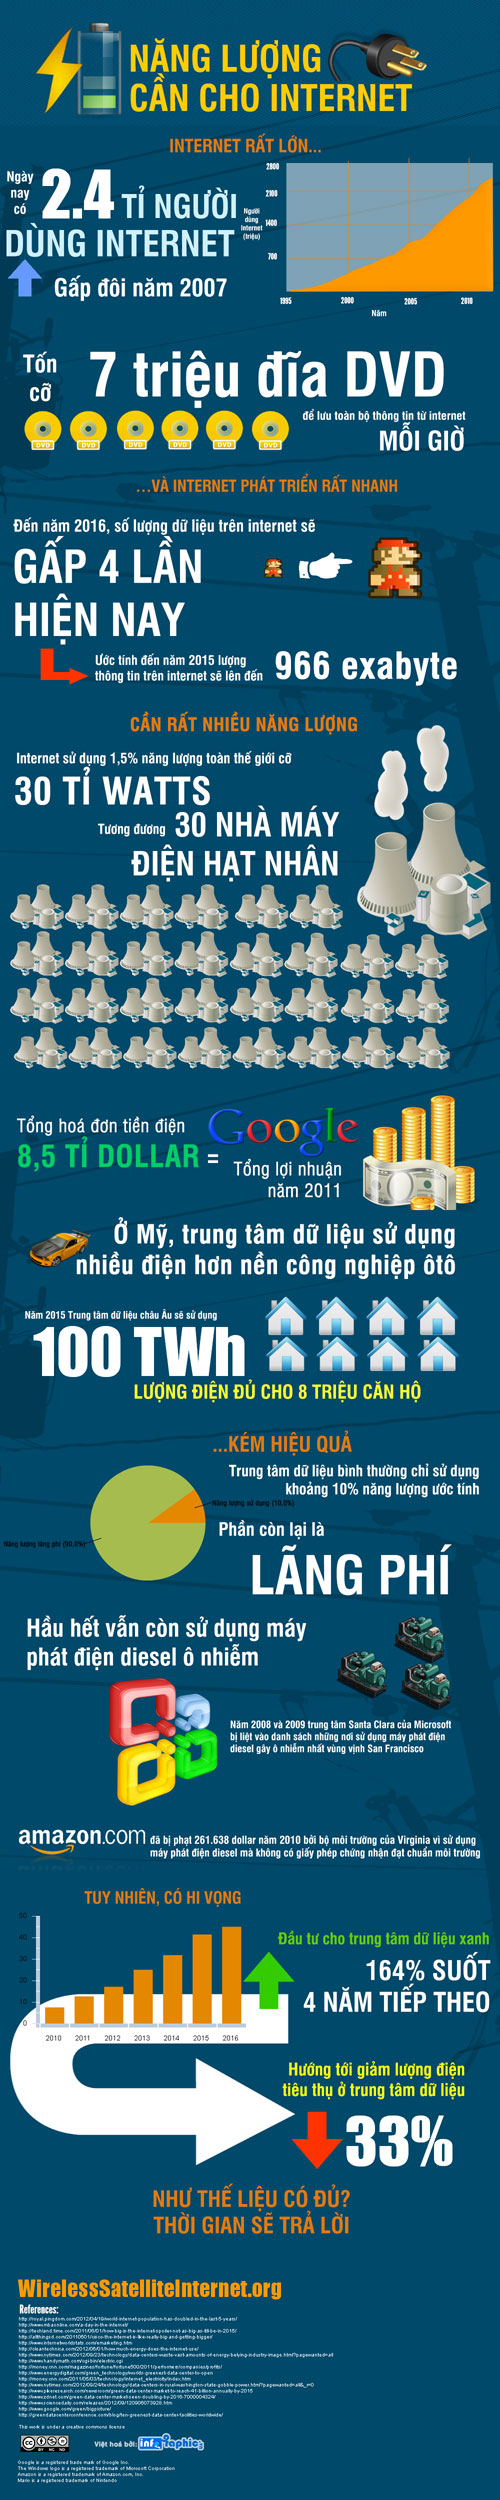 Infographic: Năng lượng cần cho Internet - Ảnh 2